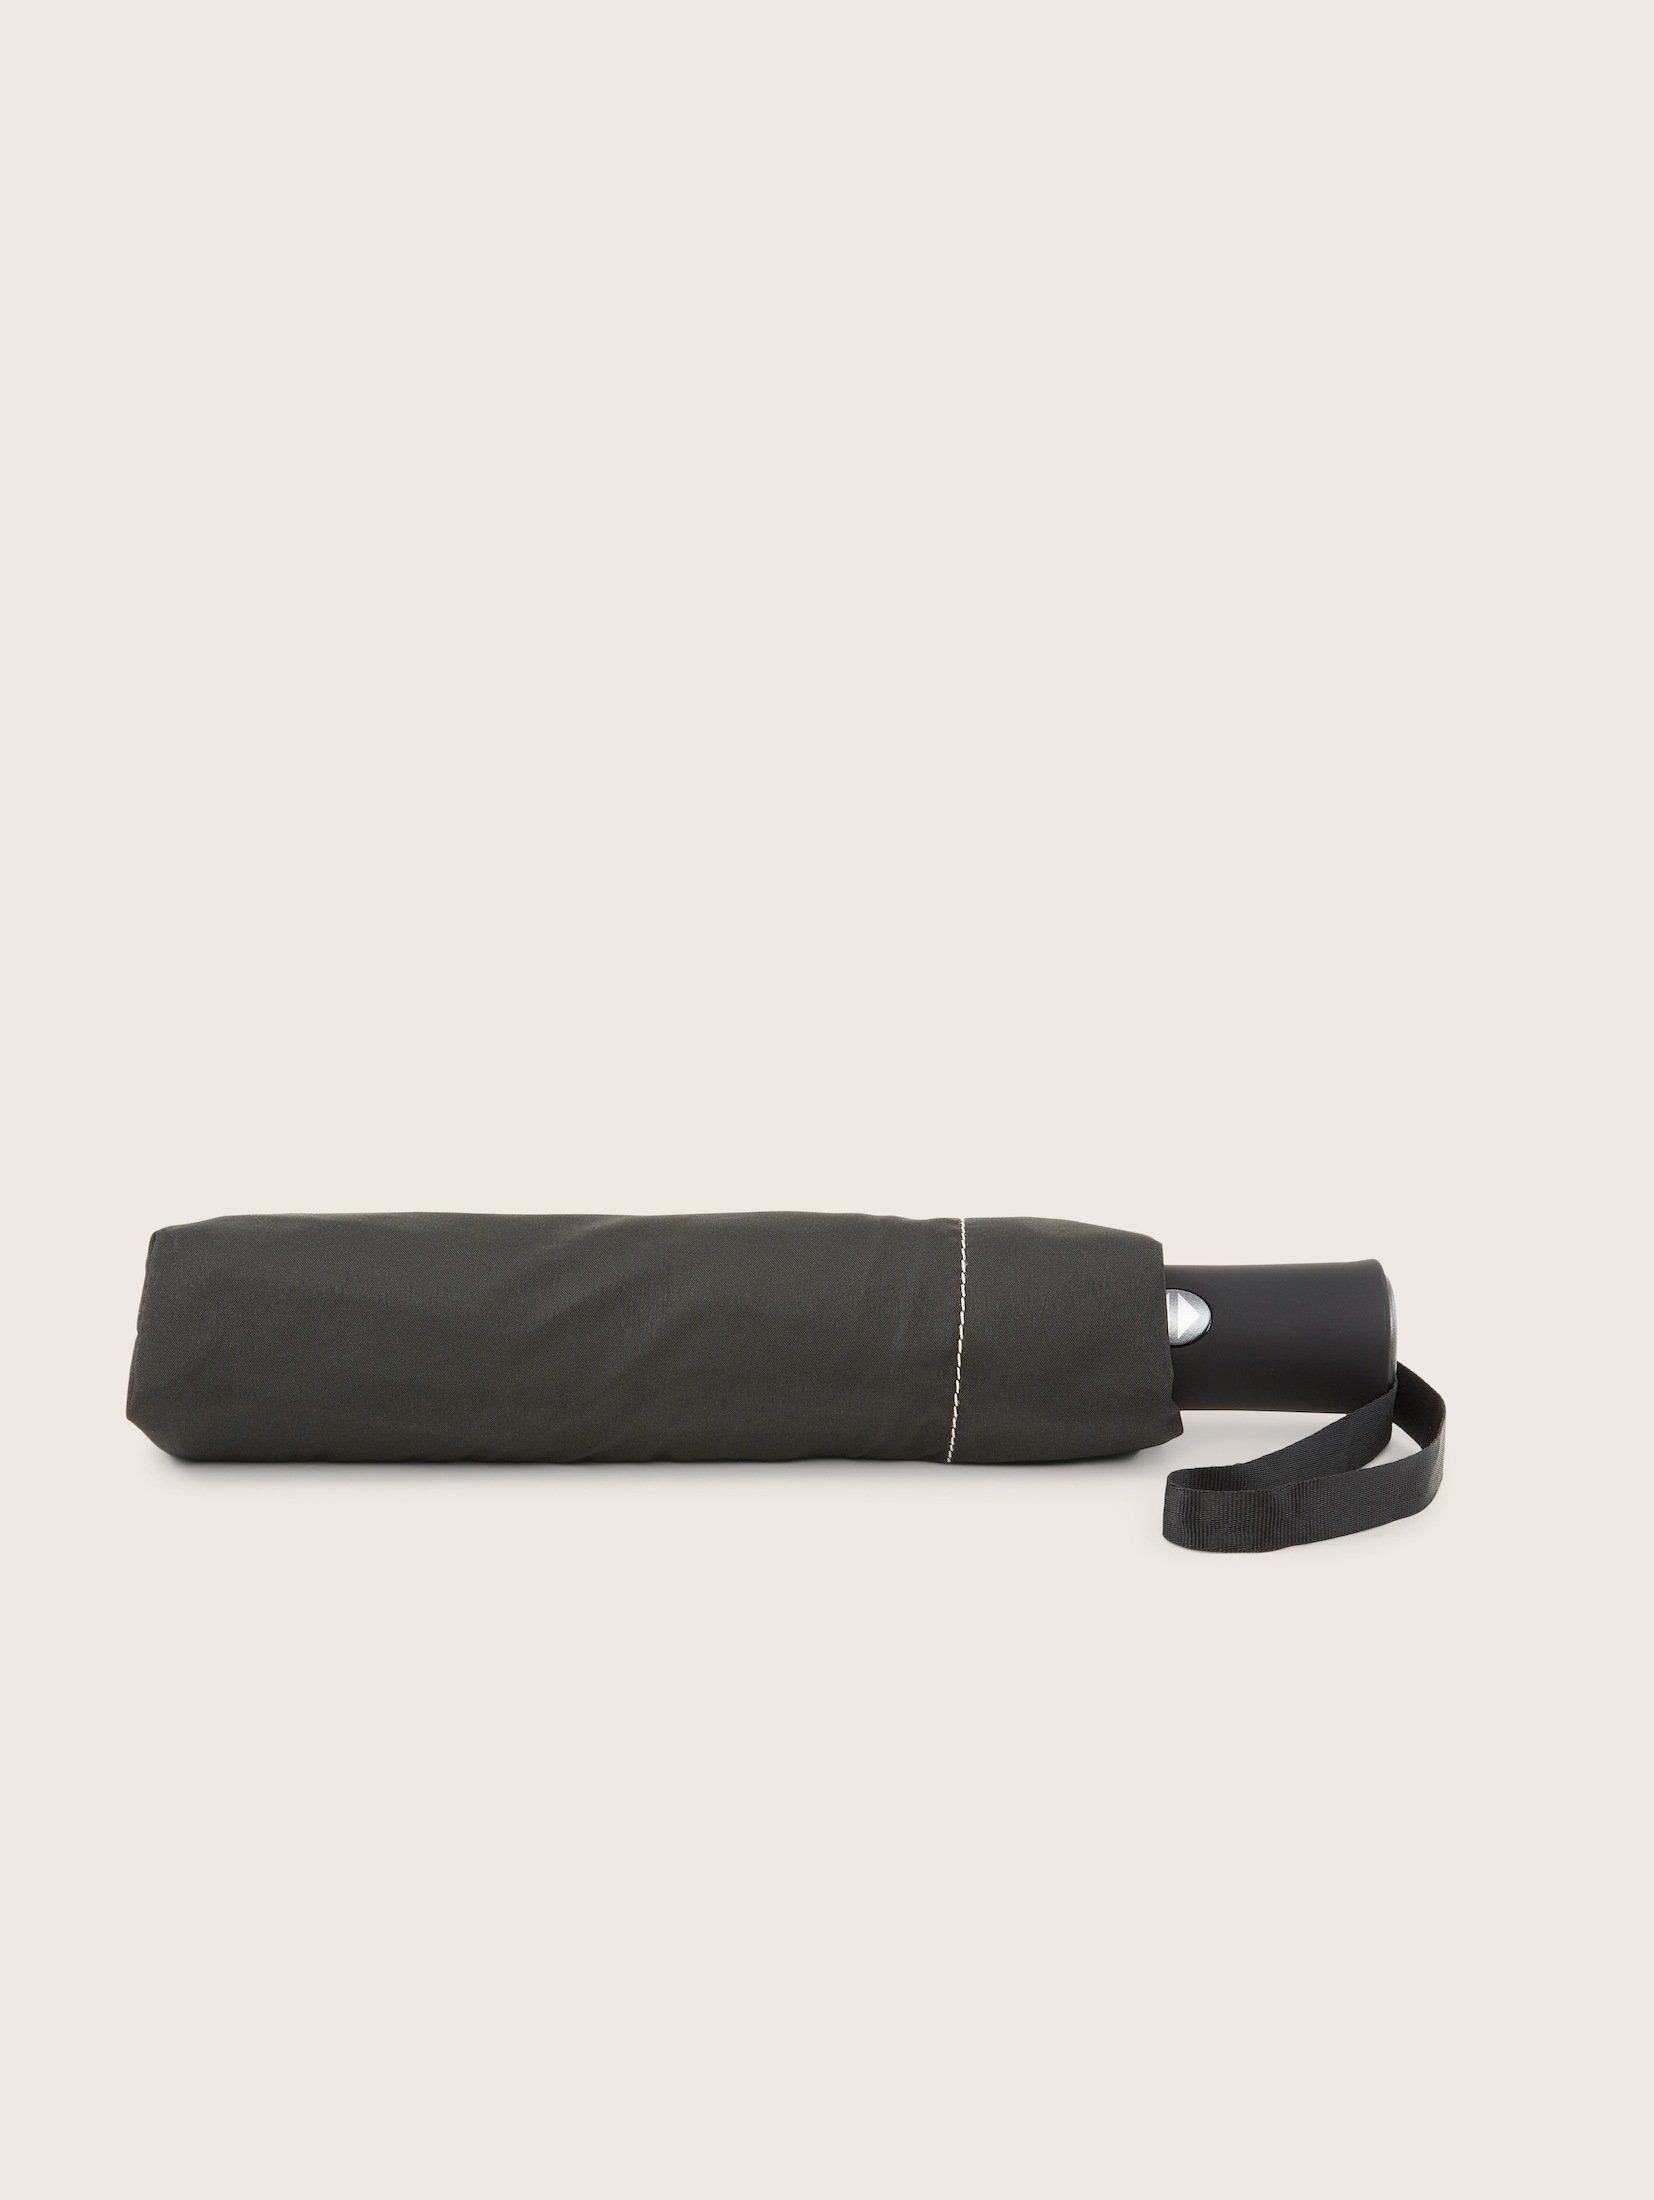 Kleiner Taschenregenschirm Regenschirm TAILOR Automatik TOM black